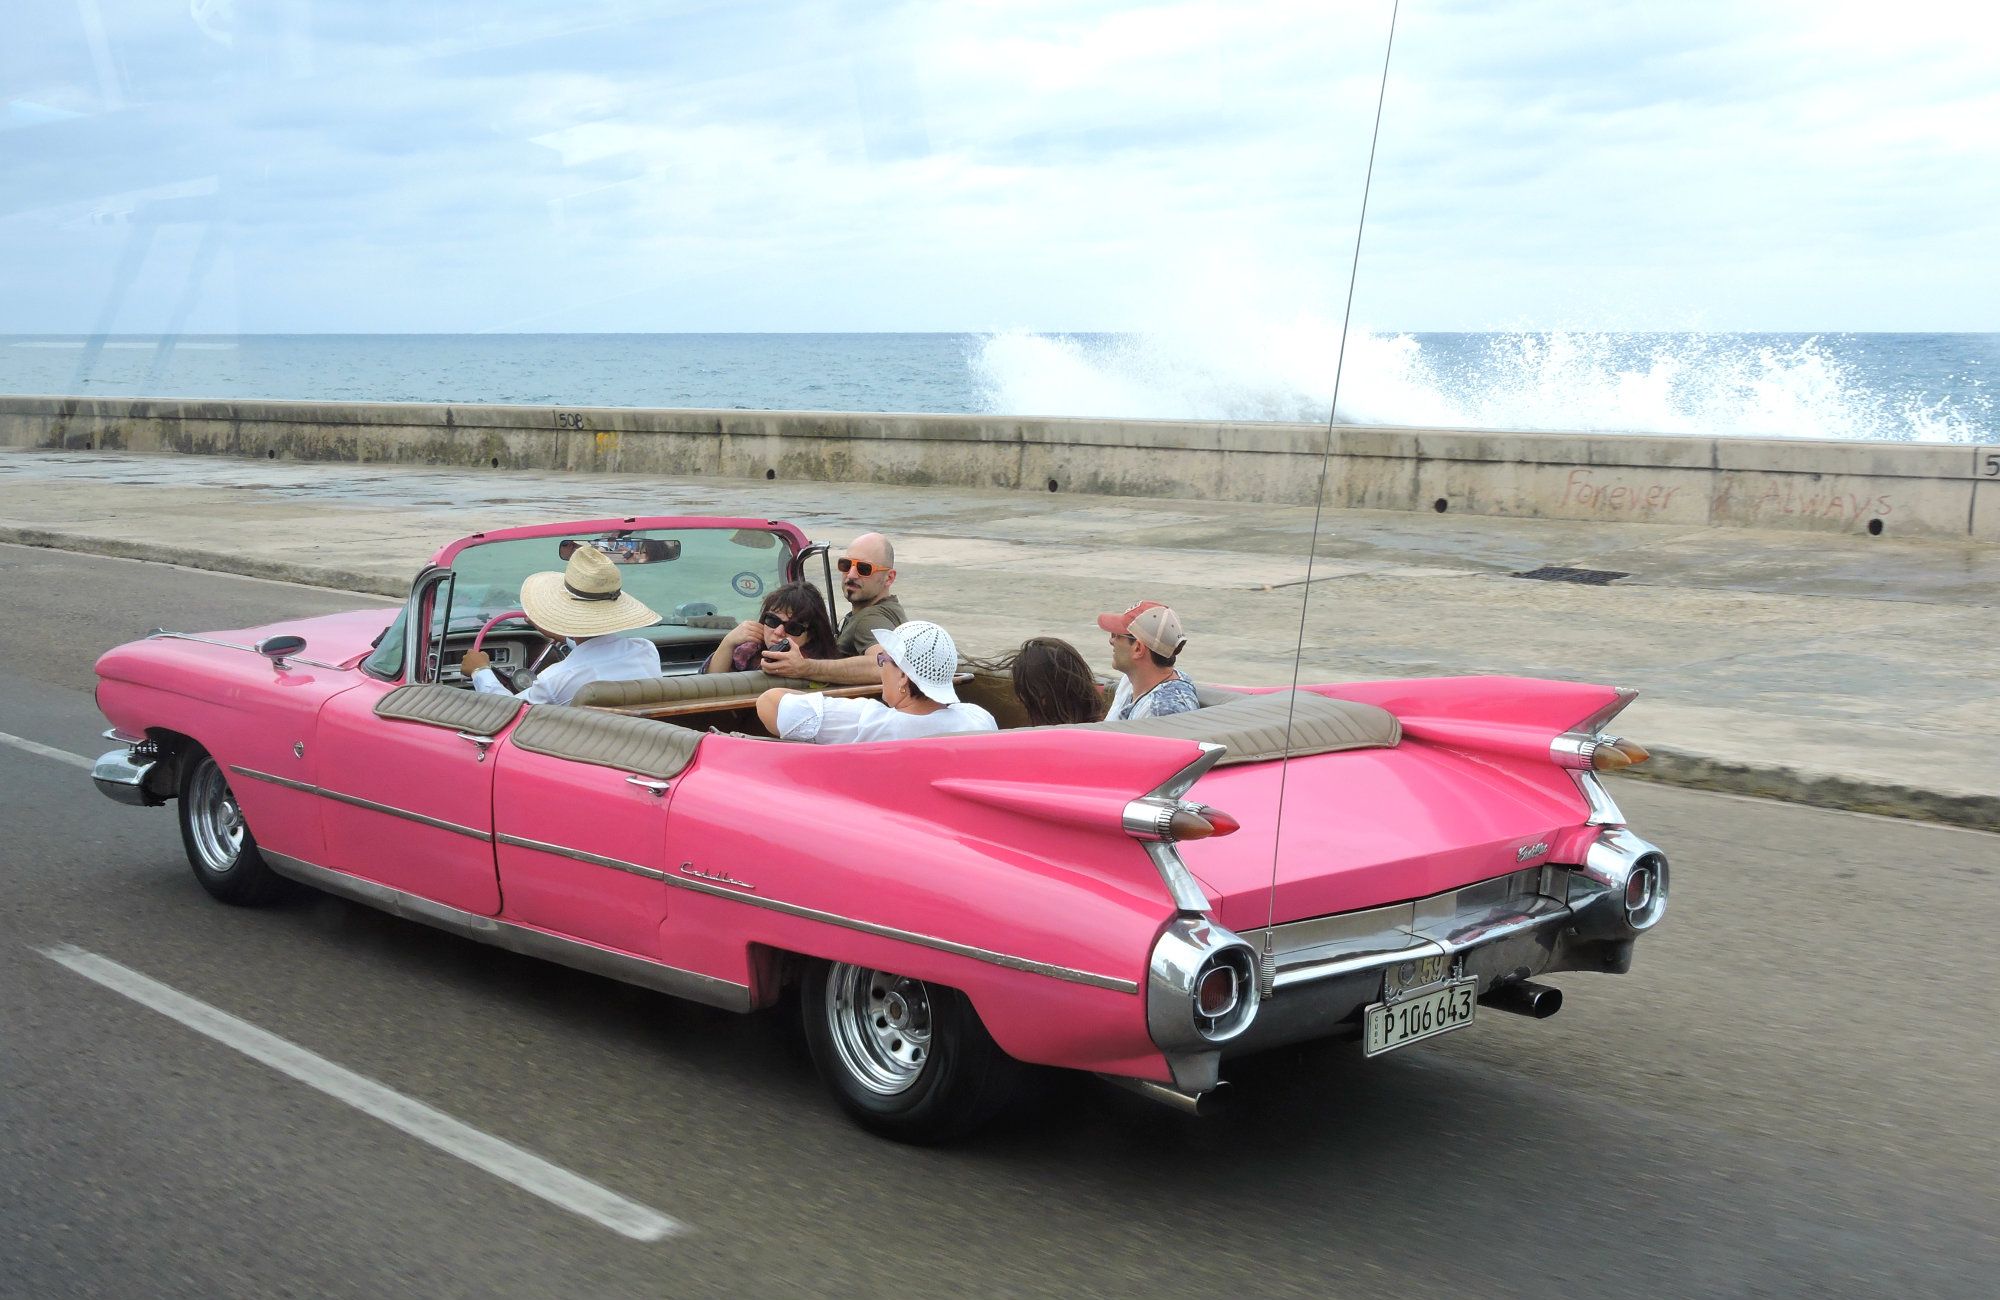 First trip to Cuba, Varadero Taxi, Cuba Taxi, Bus Tour To Havana, Melia Marina Varadero Food, Melia Marina Varadero, Varadero Beach, Cuba, Things to know trip to Cuba